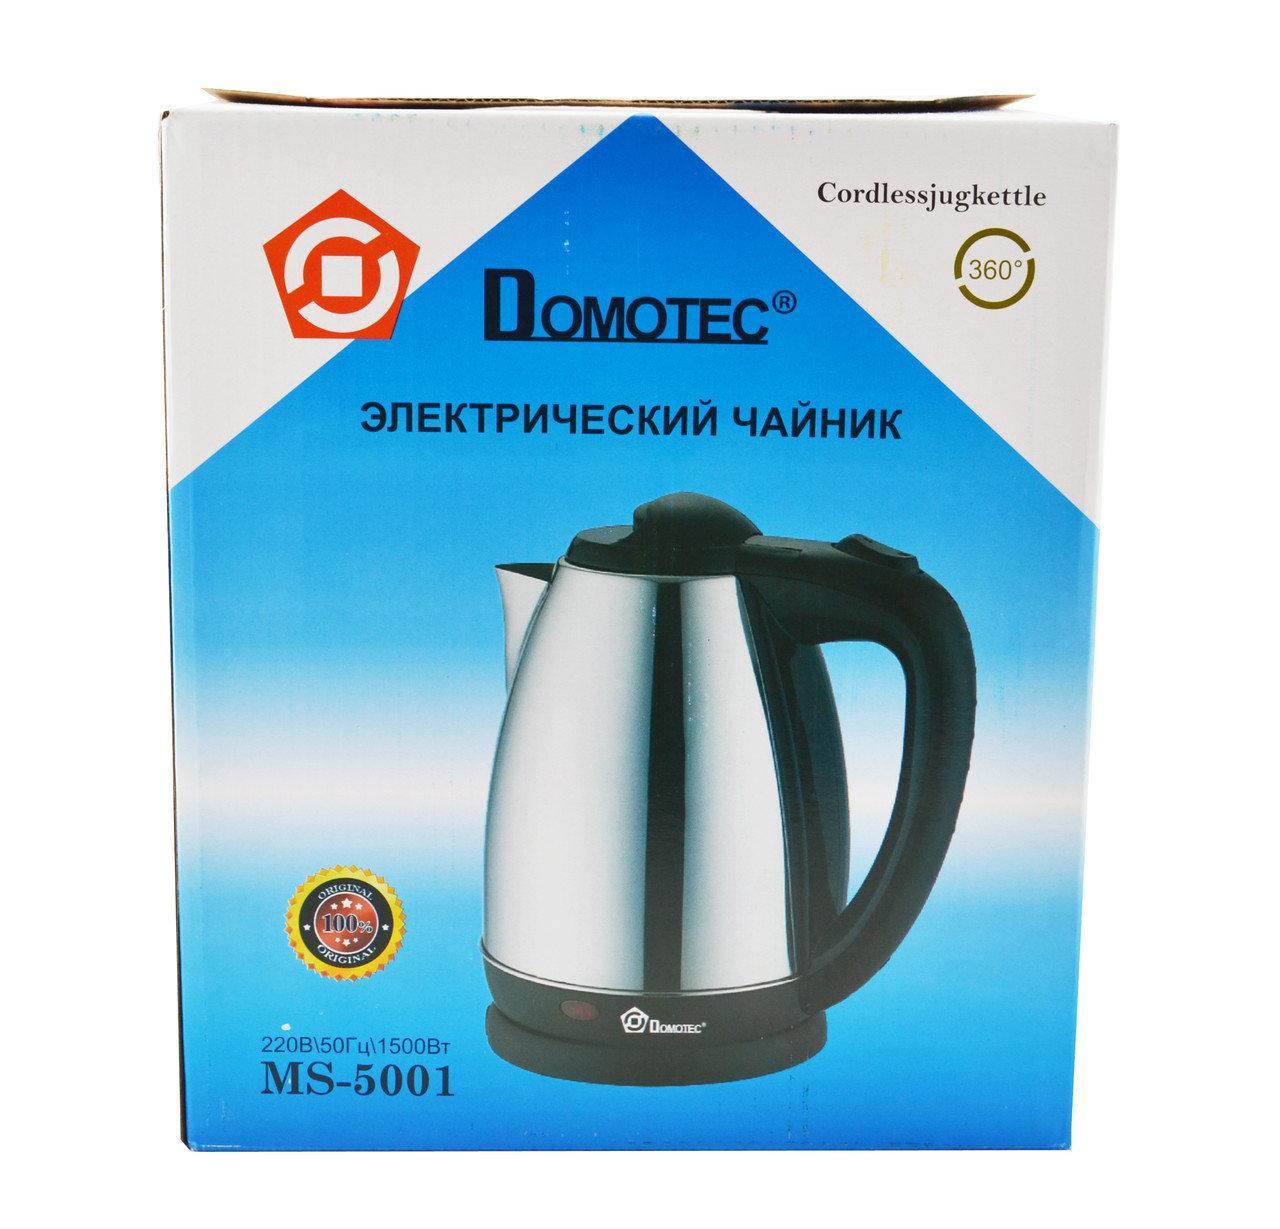 Електричний дисковий металевий чайник Domotec MS-5001 2л, Топовий